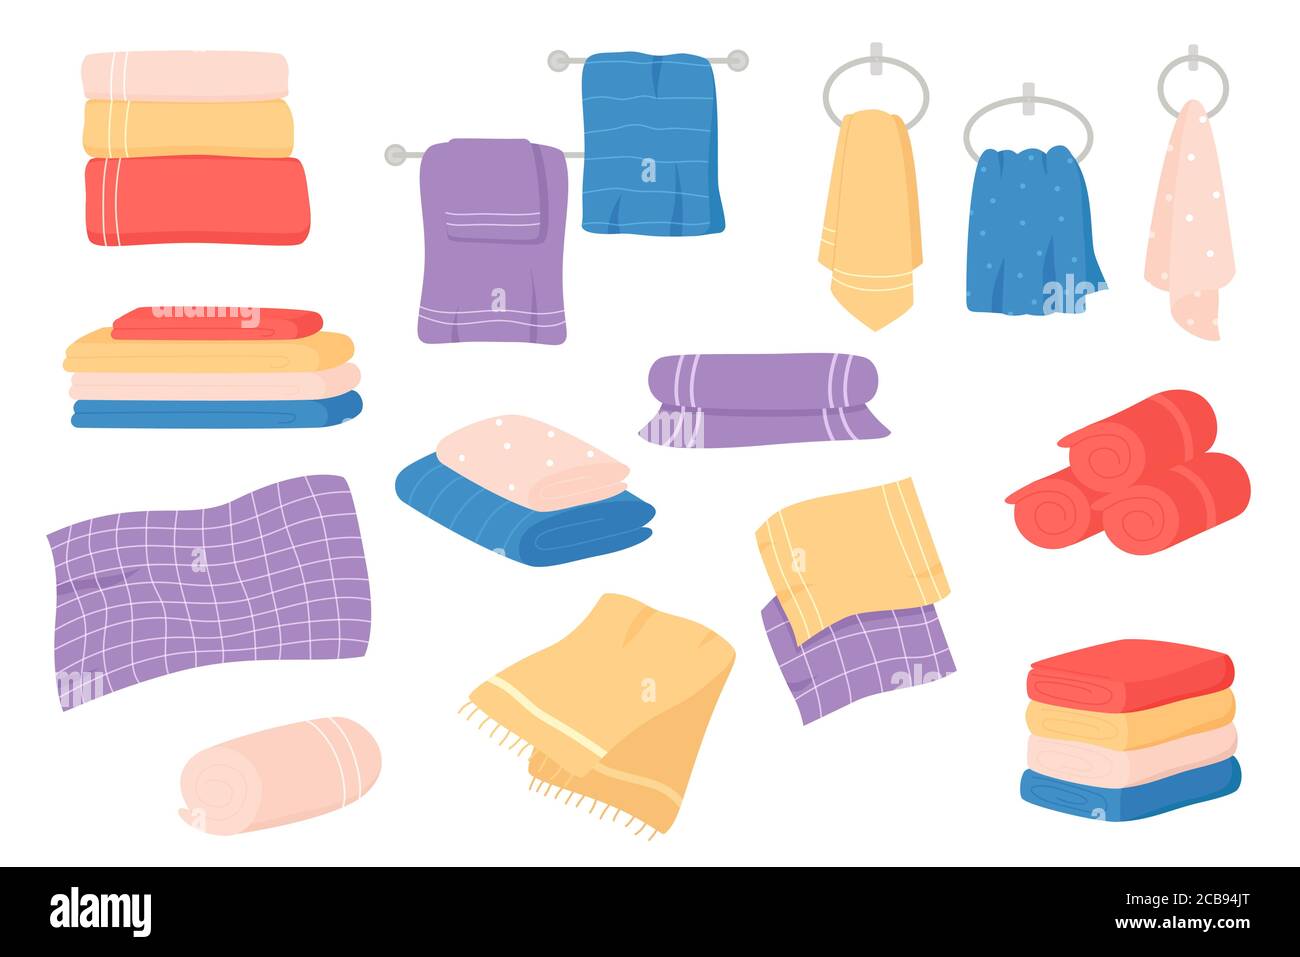 Fabric towels set. Cloth towel for bath, hygiene. Bathroom textile cartoon vector illustration Stock Vector